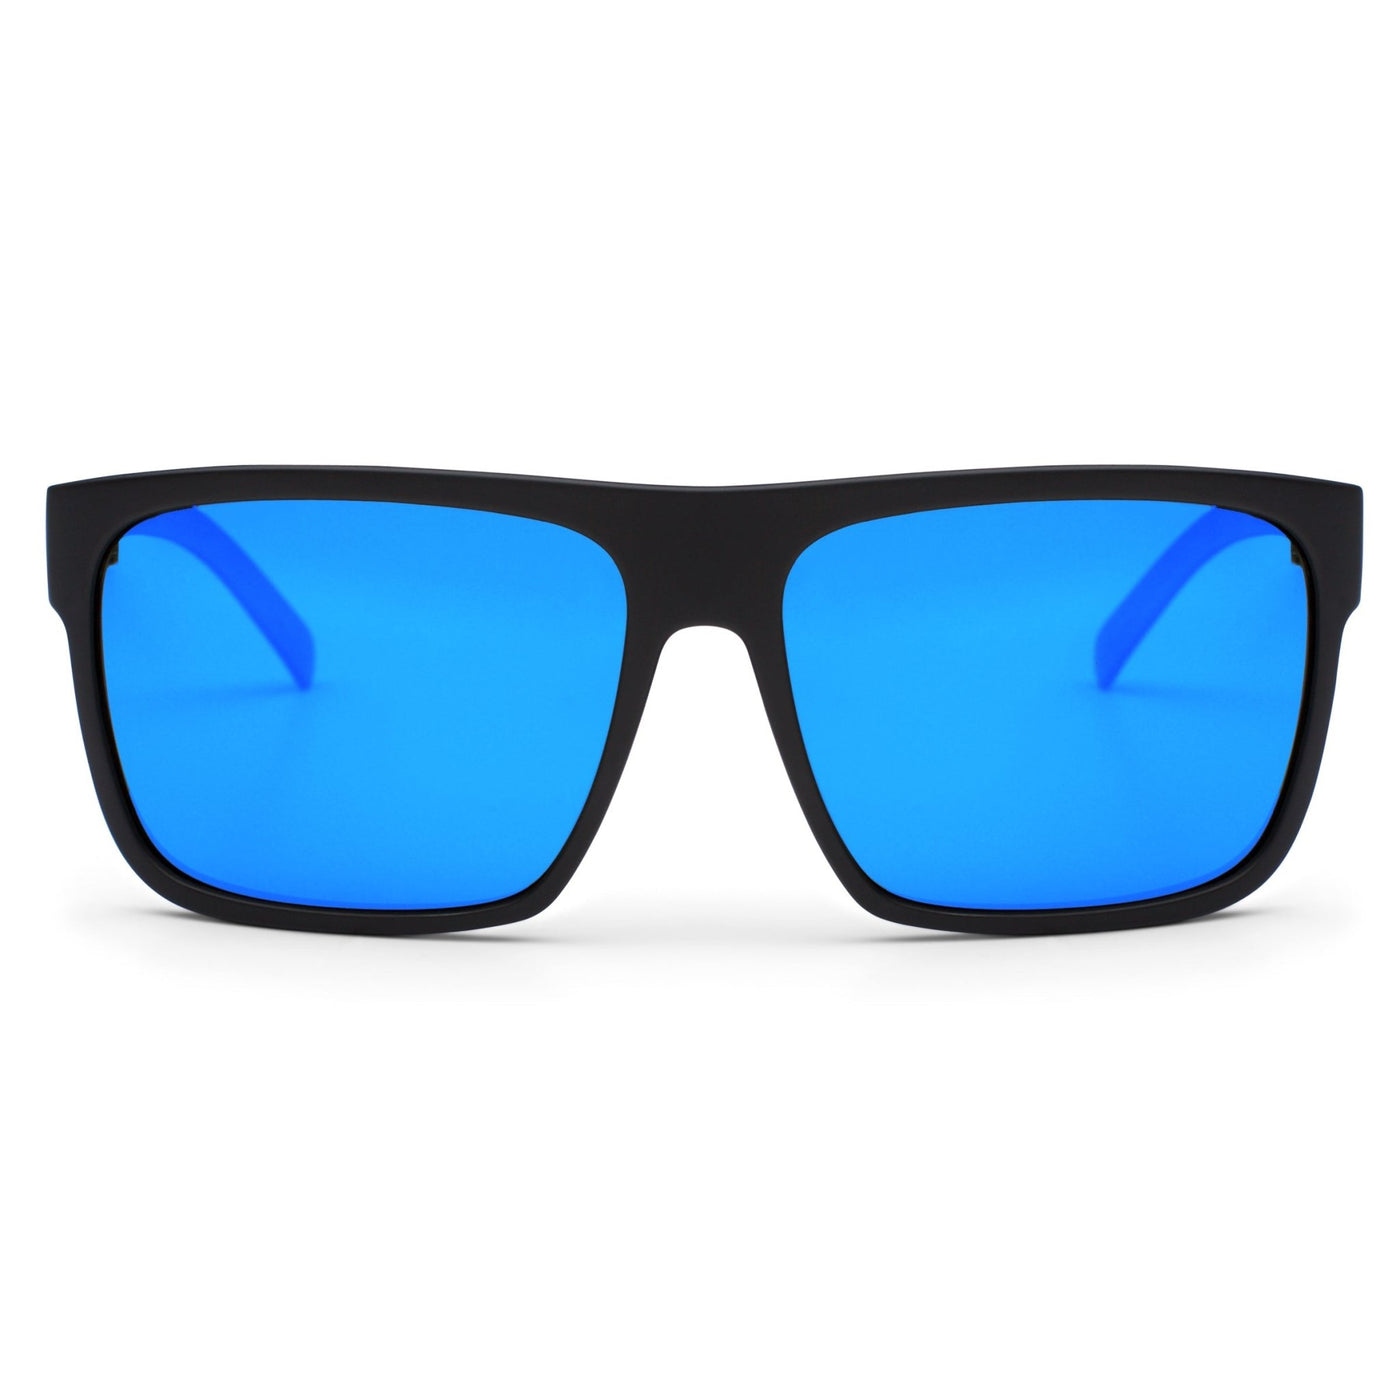 Black OTIS Eyewear sunglasses with blue reflective lenses